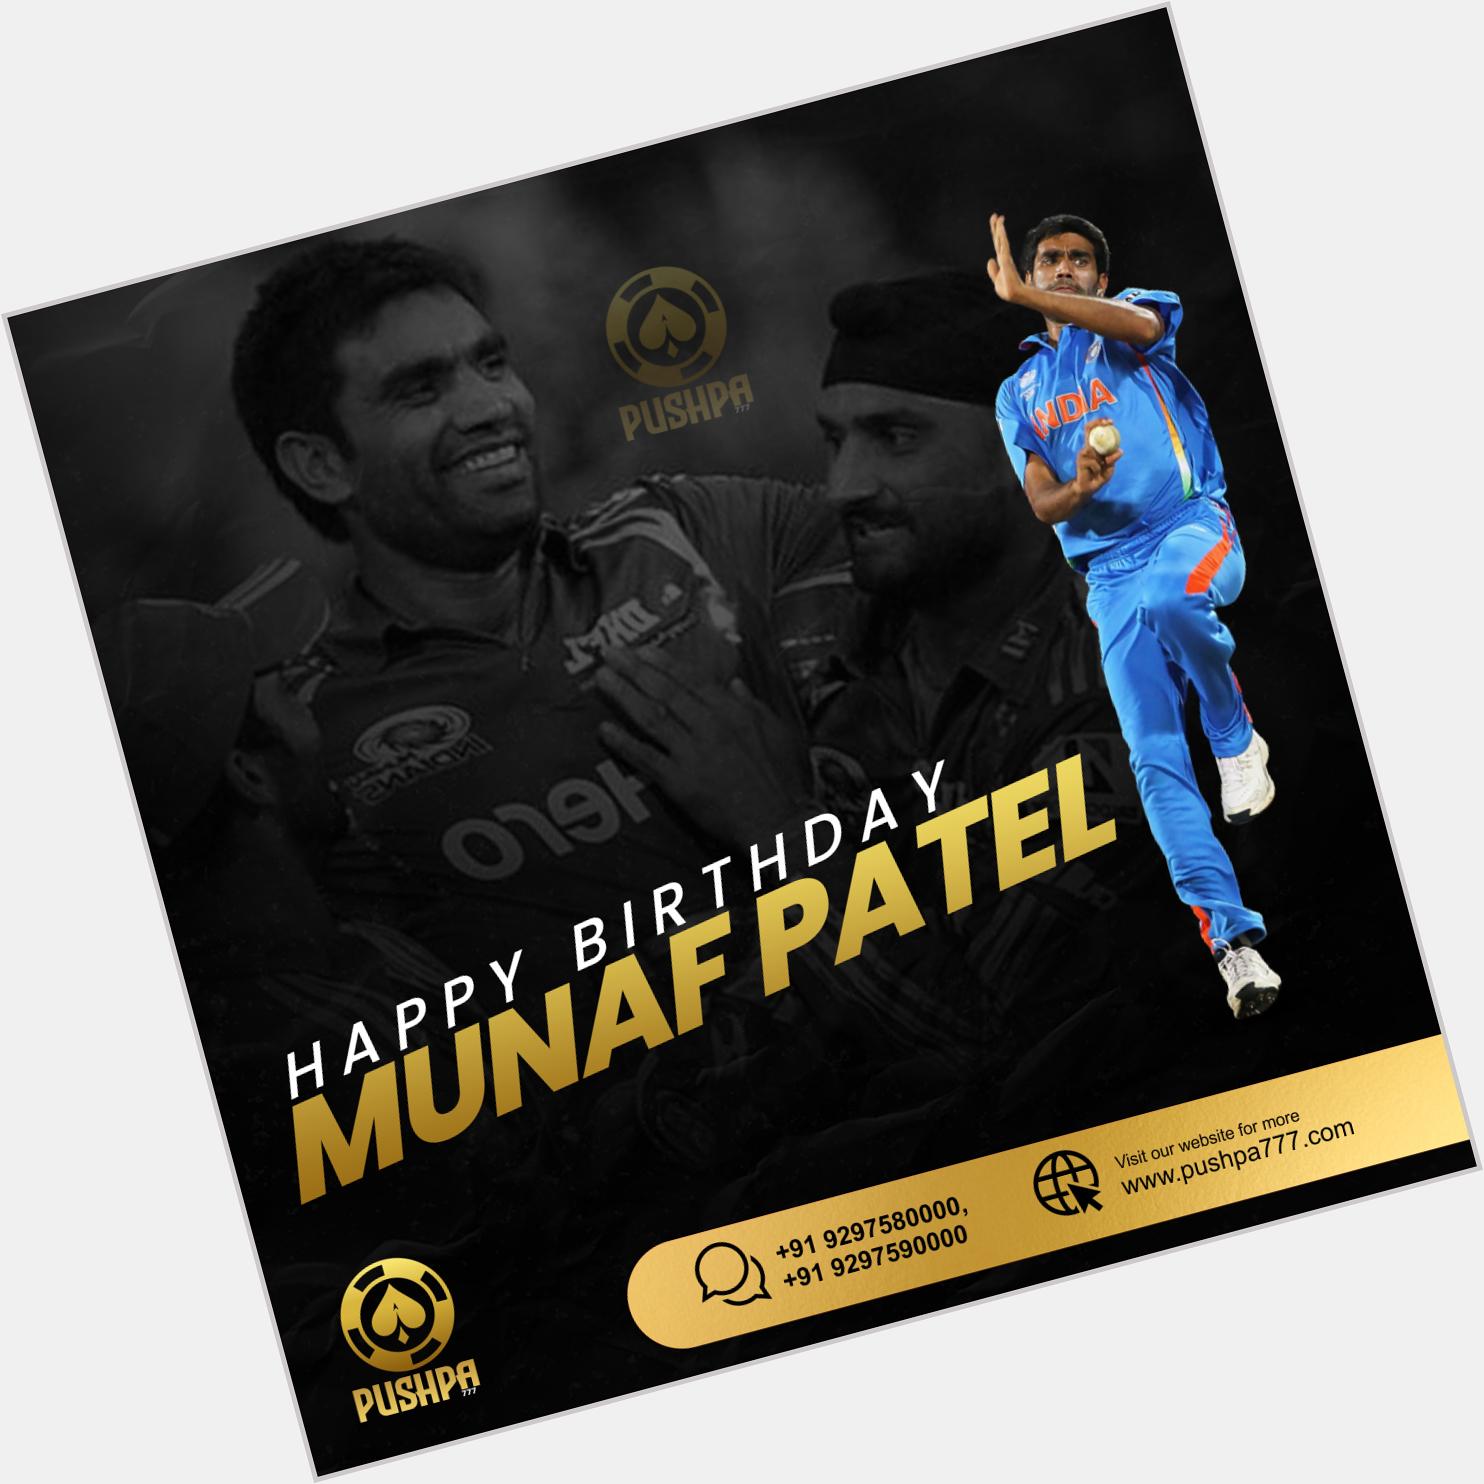 Happy birthday to former fast bowler, Munaf Patel       